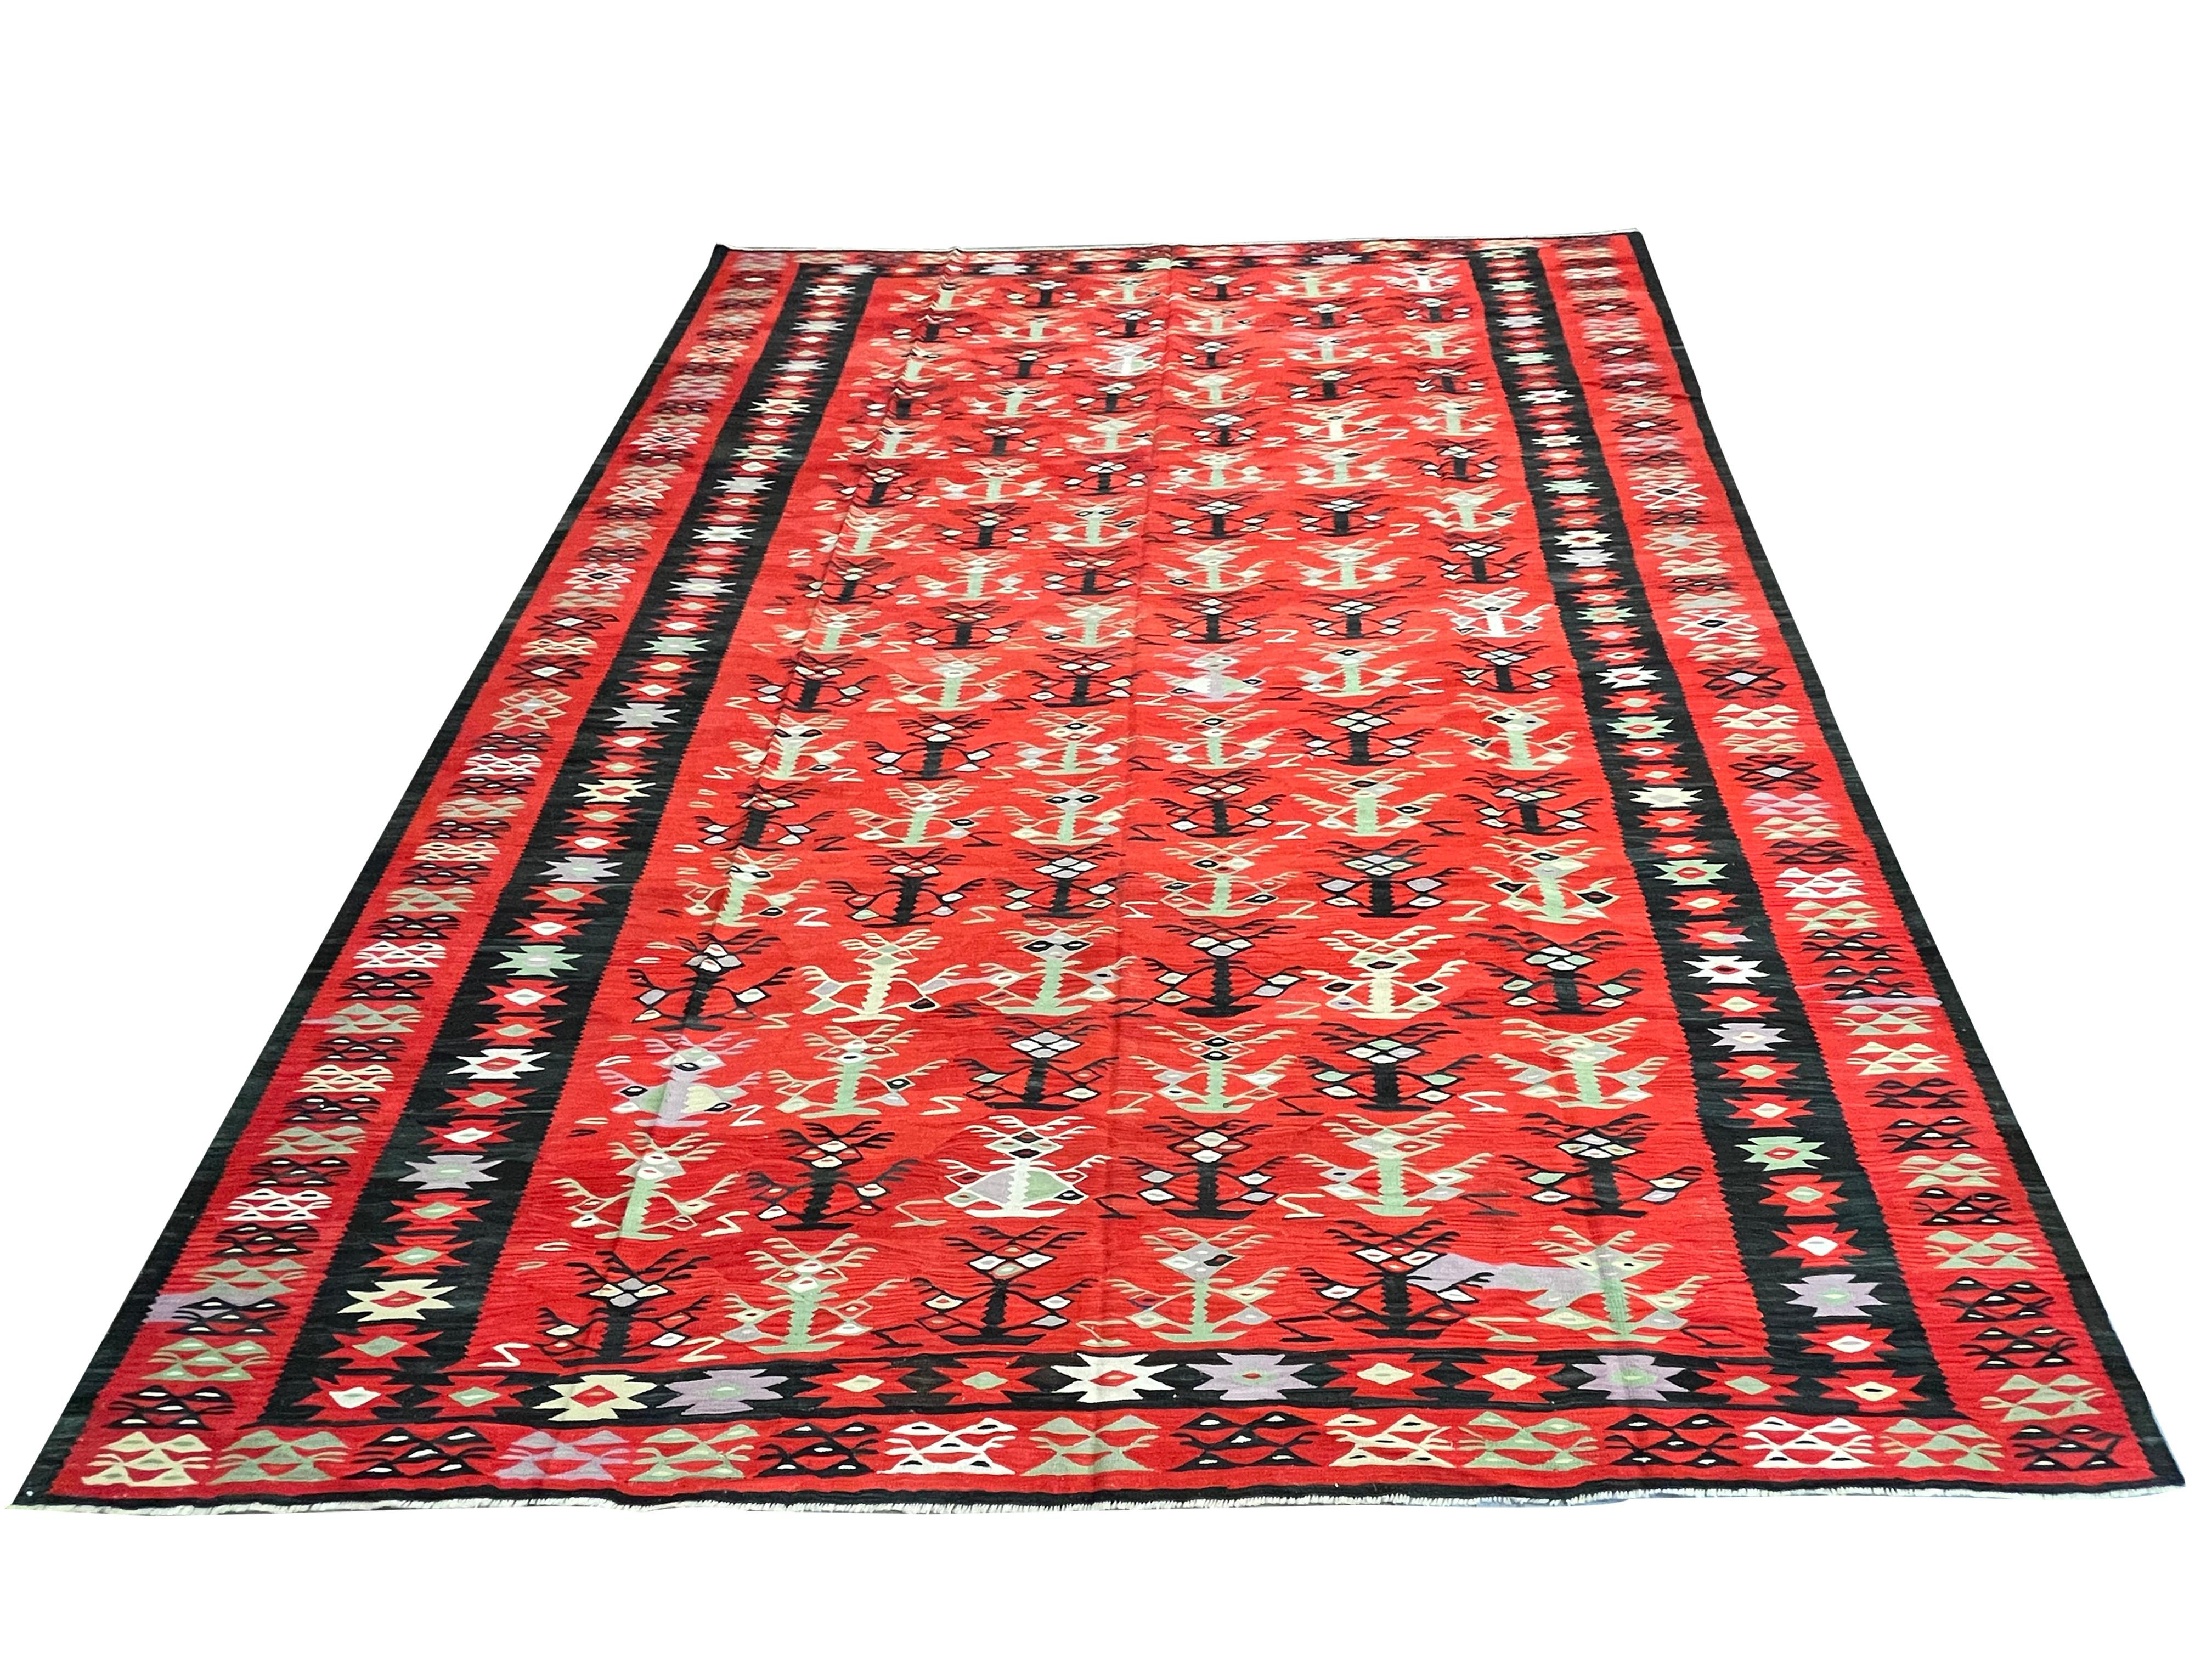 Dieser kräftige rote Kelim ist ein traditioneller, von Hand gewebter Flachgewebe-Teppich aus der Zeit um 1900. Das Design zeigt ein geometrisches Muster, das in kräftigen schwarzen, grünen und blauen Akzenten auf einem schönen roten Hintergrund